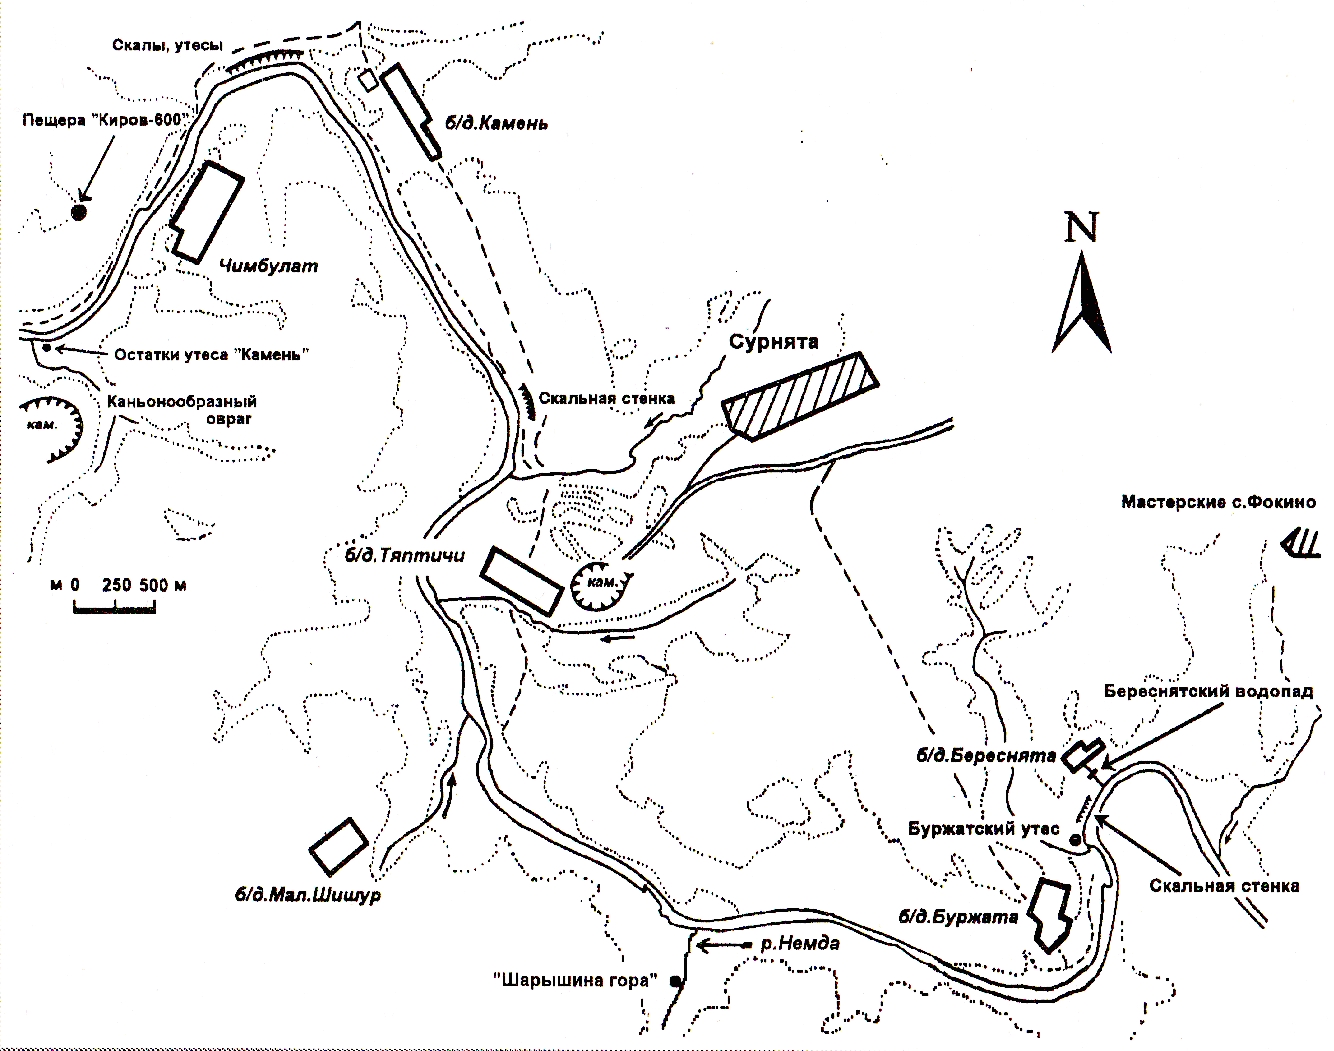 Схема участка реки Немды